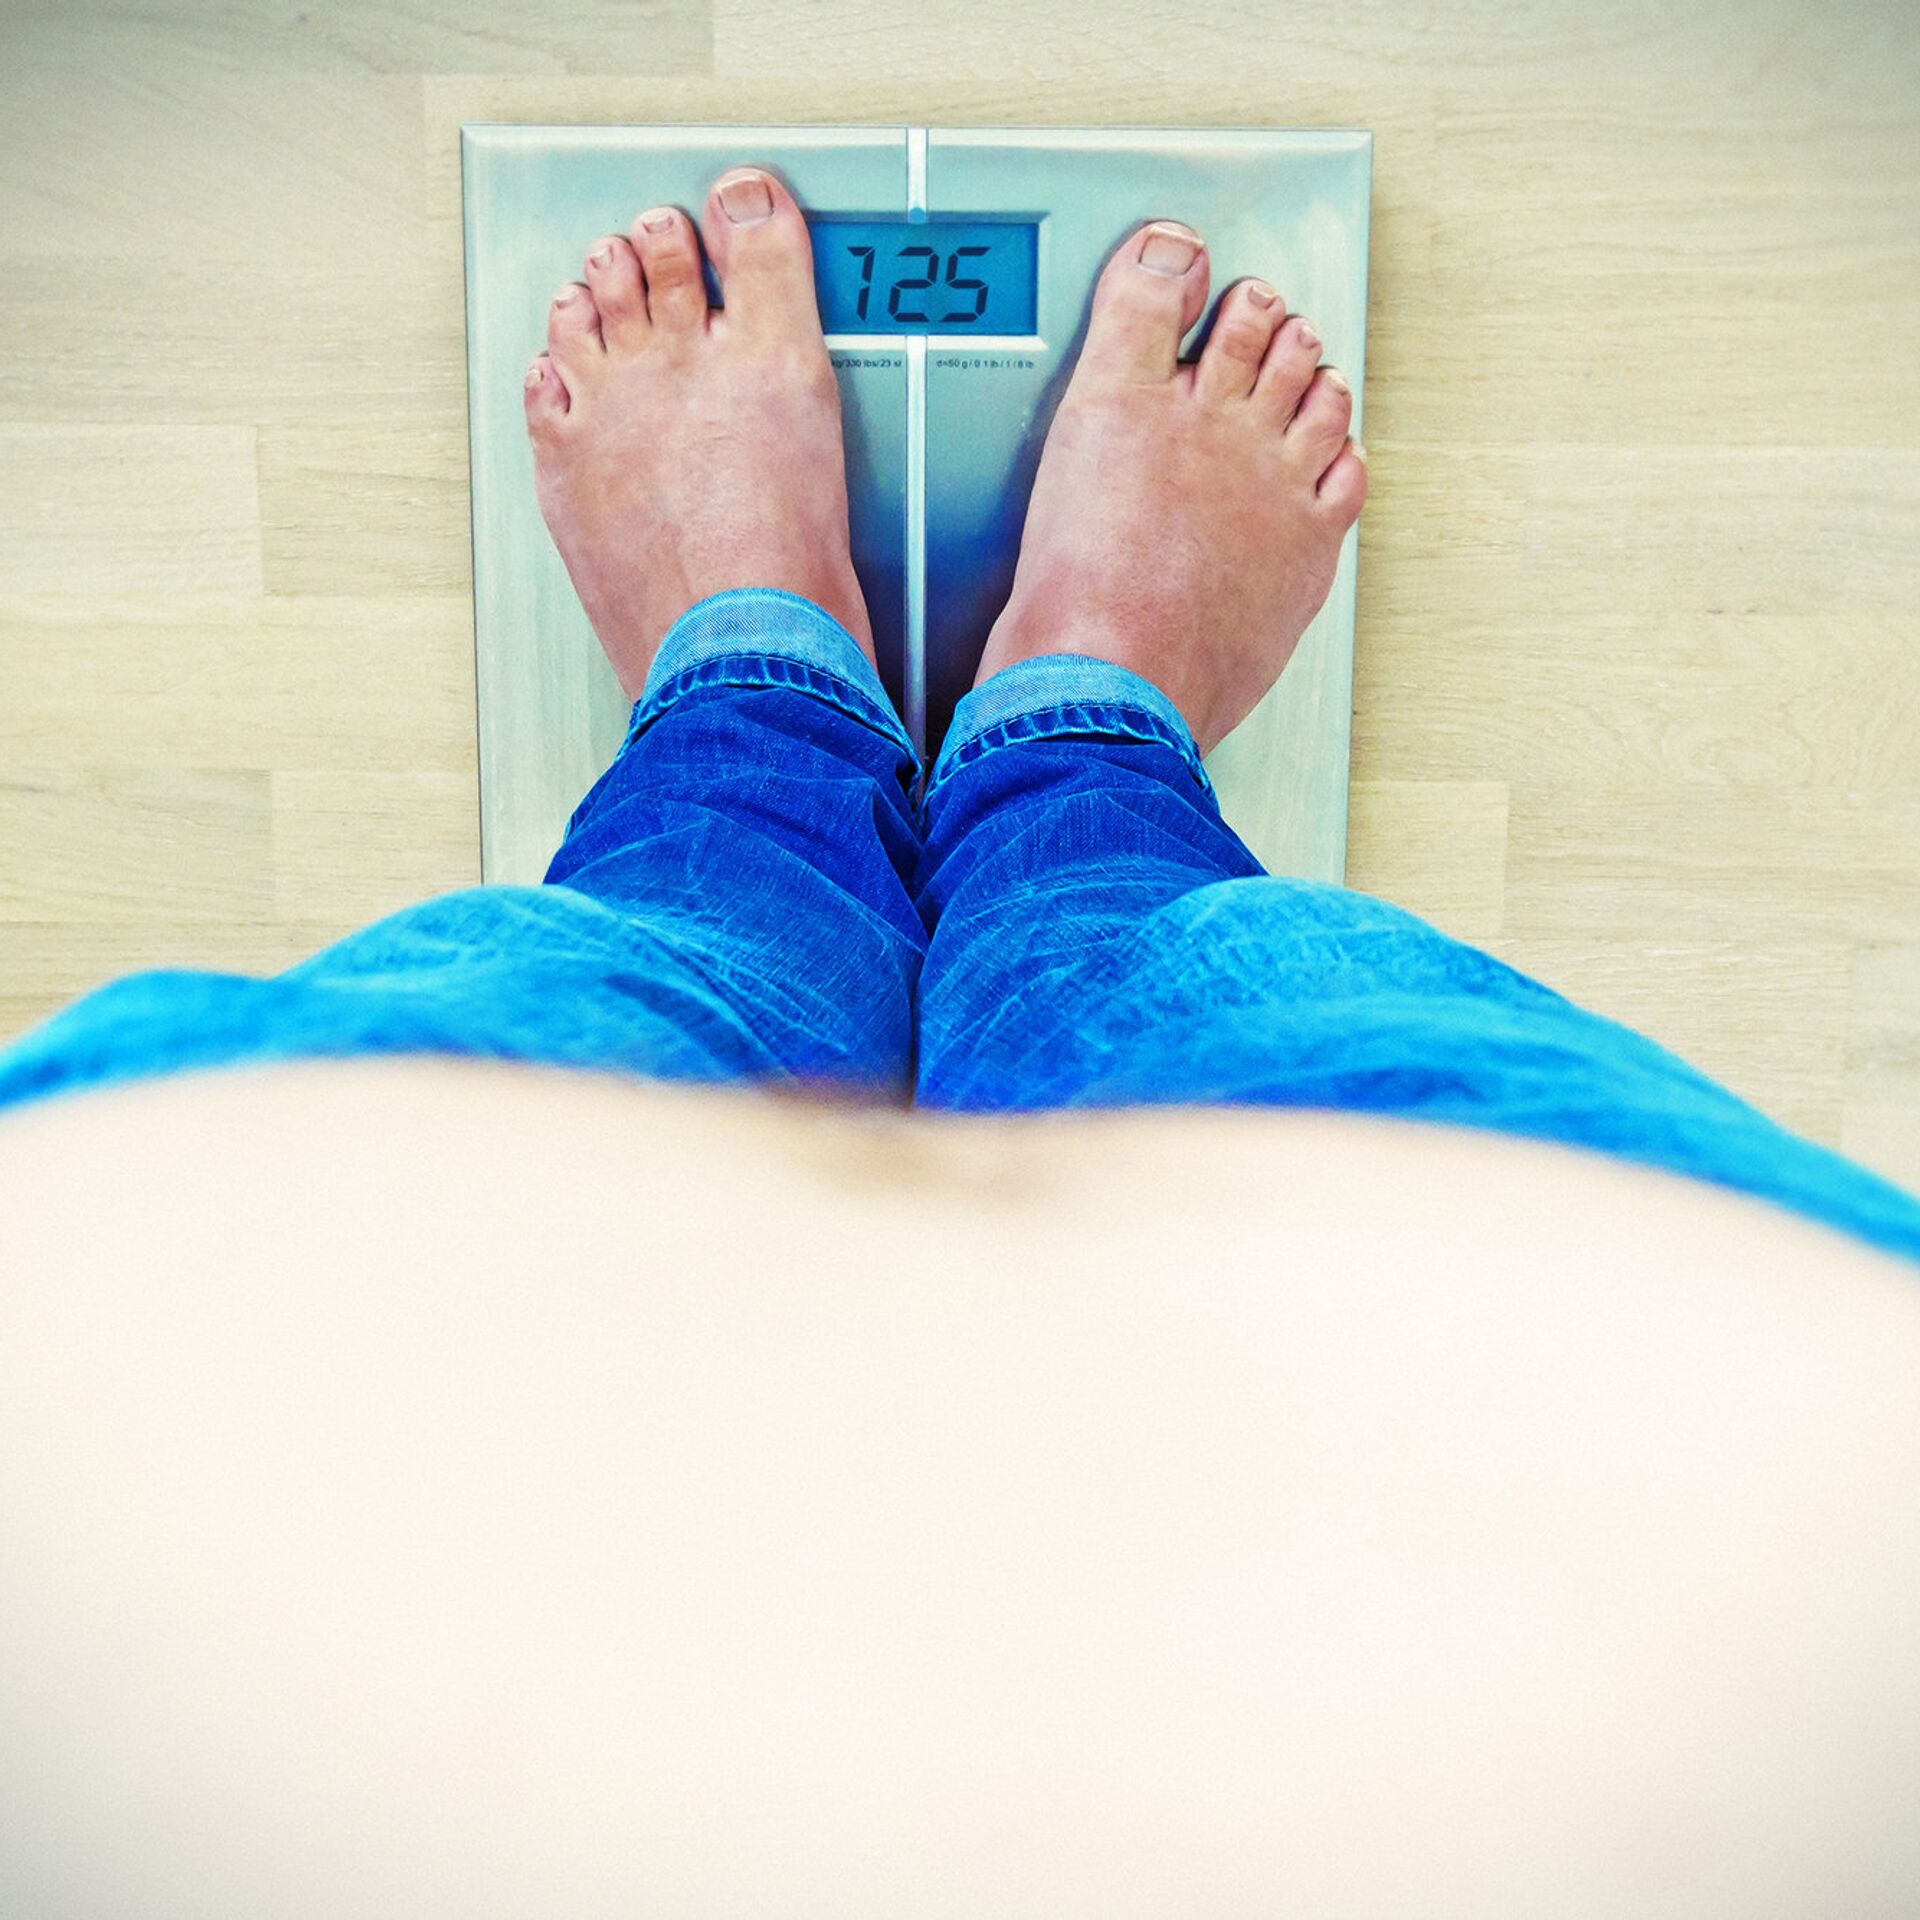 КТ голеностопного сустава с большим весом - противопоказания